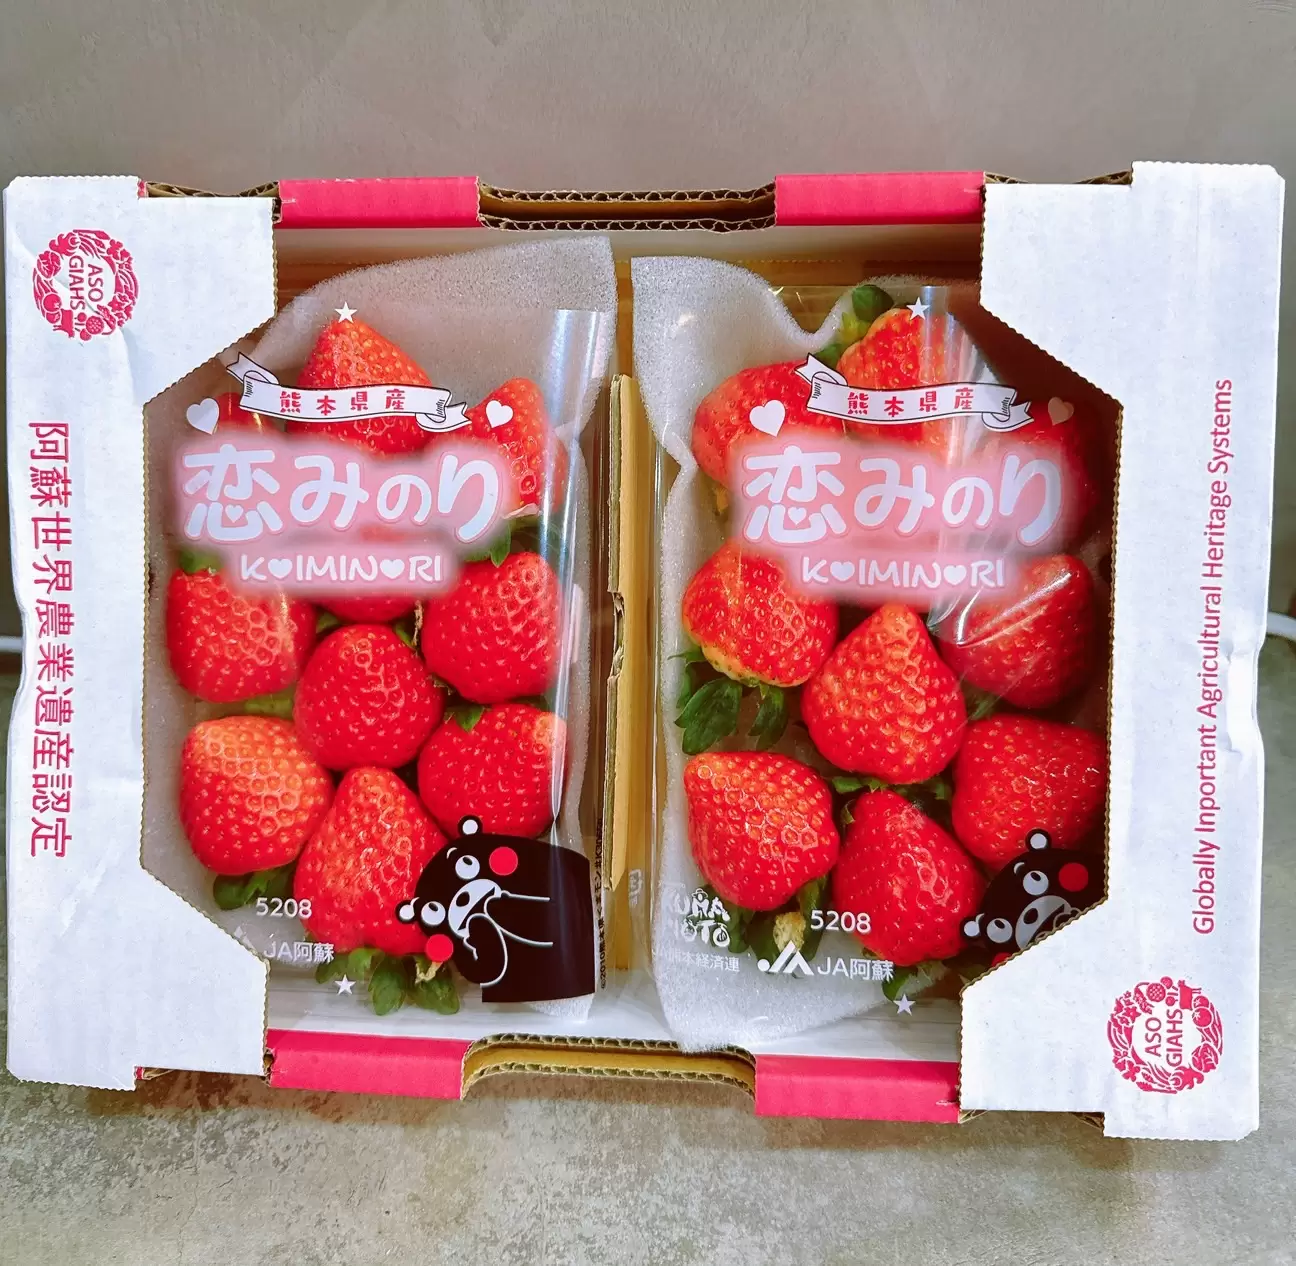 【專業農】日本 熊本 阿蘇 戀之實 恋みのり 草莓